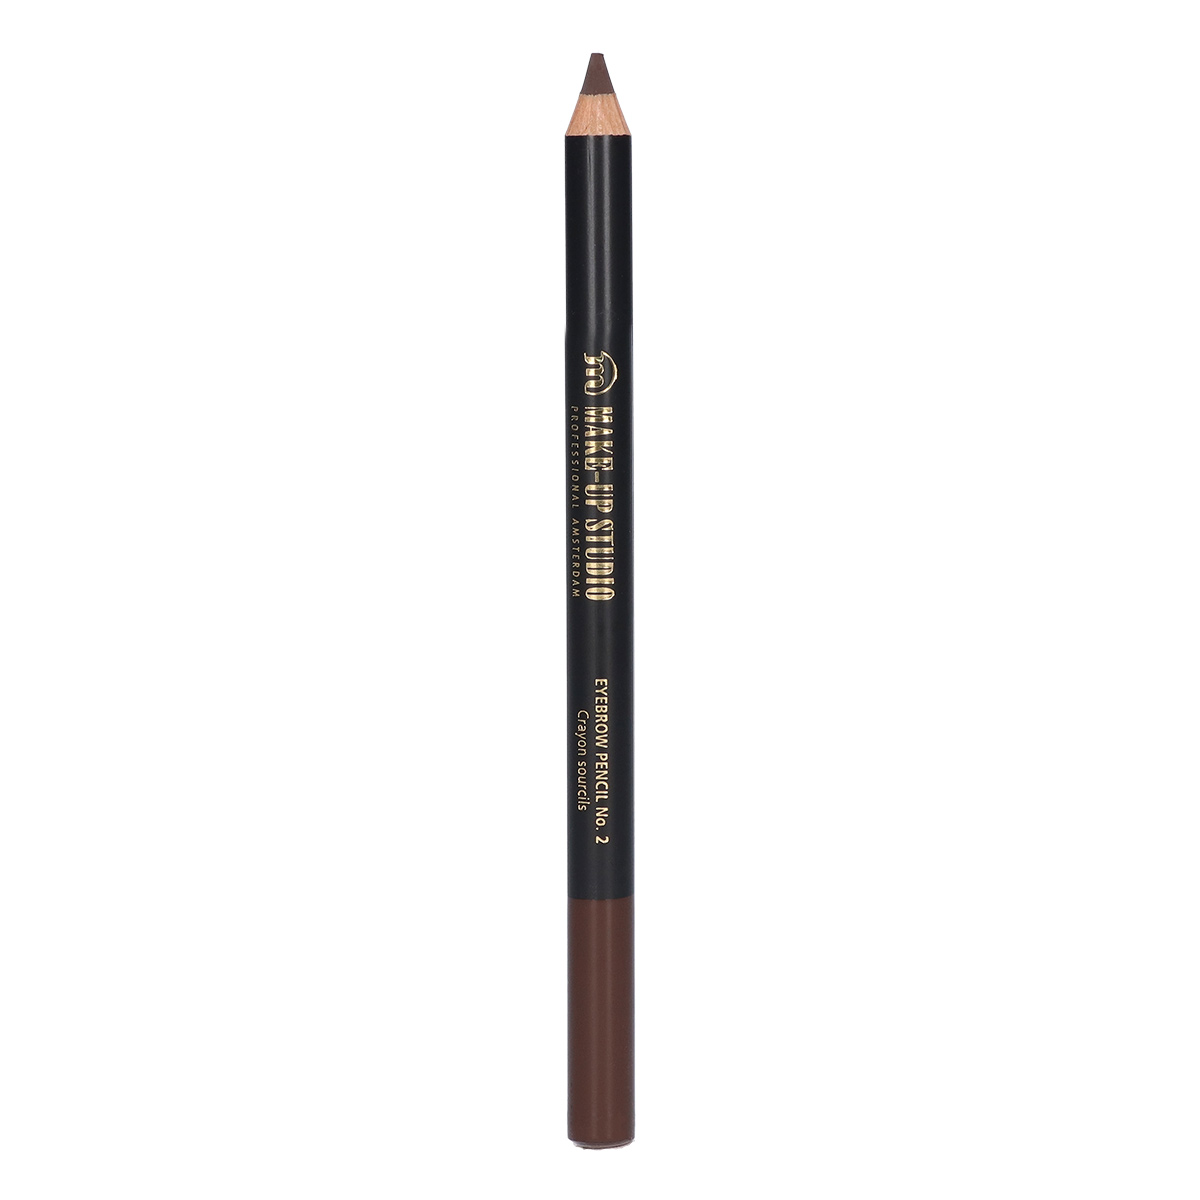 Make-up Studio Eyebrow Pencil Wenkbrauwpotlood - 2 Brown